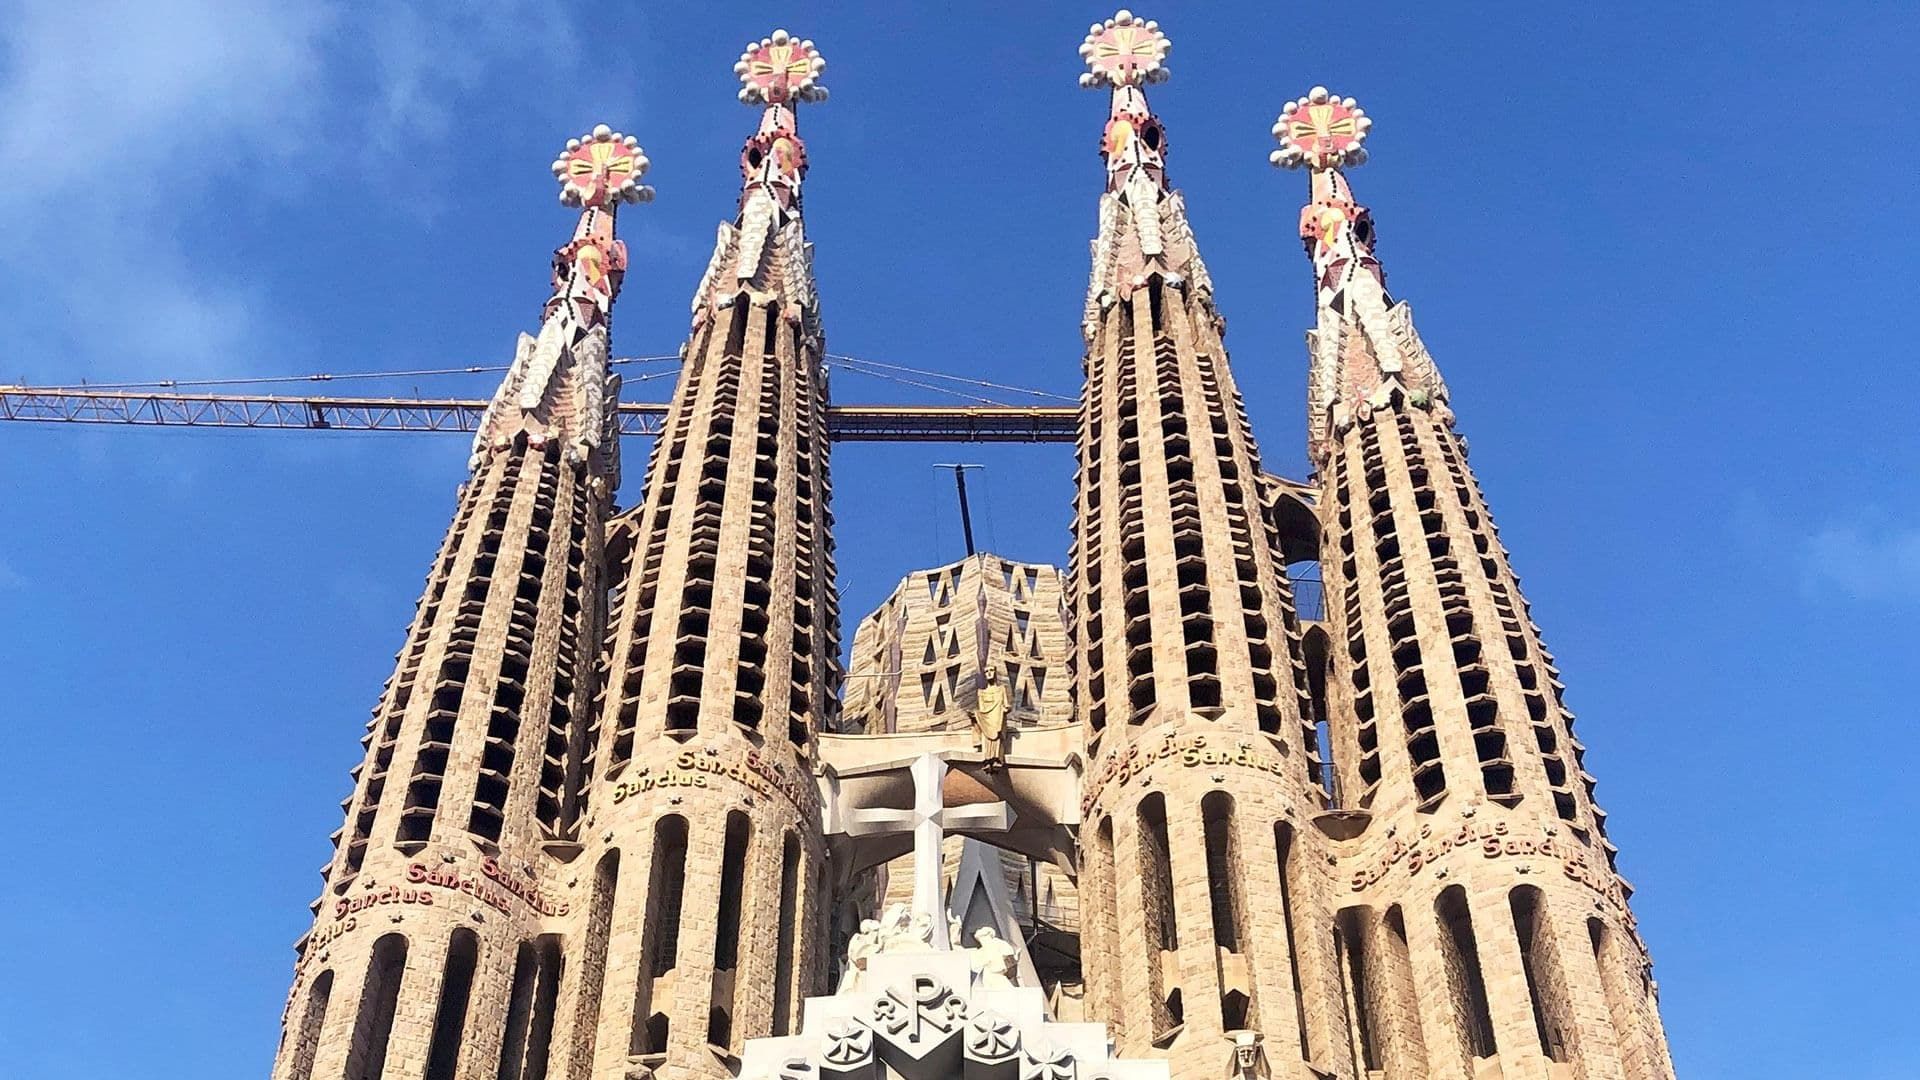 Cubierta de Sagrada Familia: El desafío de Gaudí